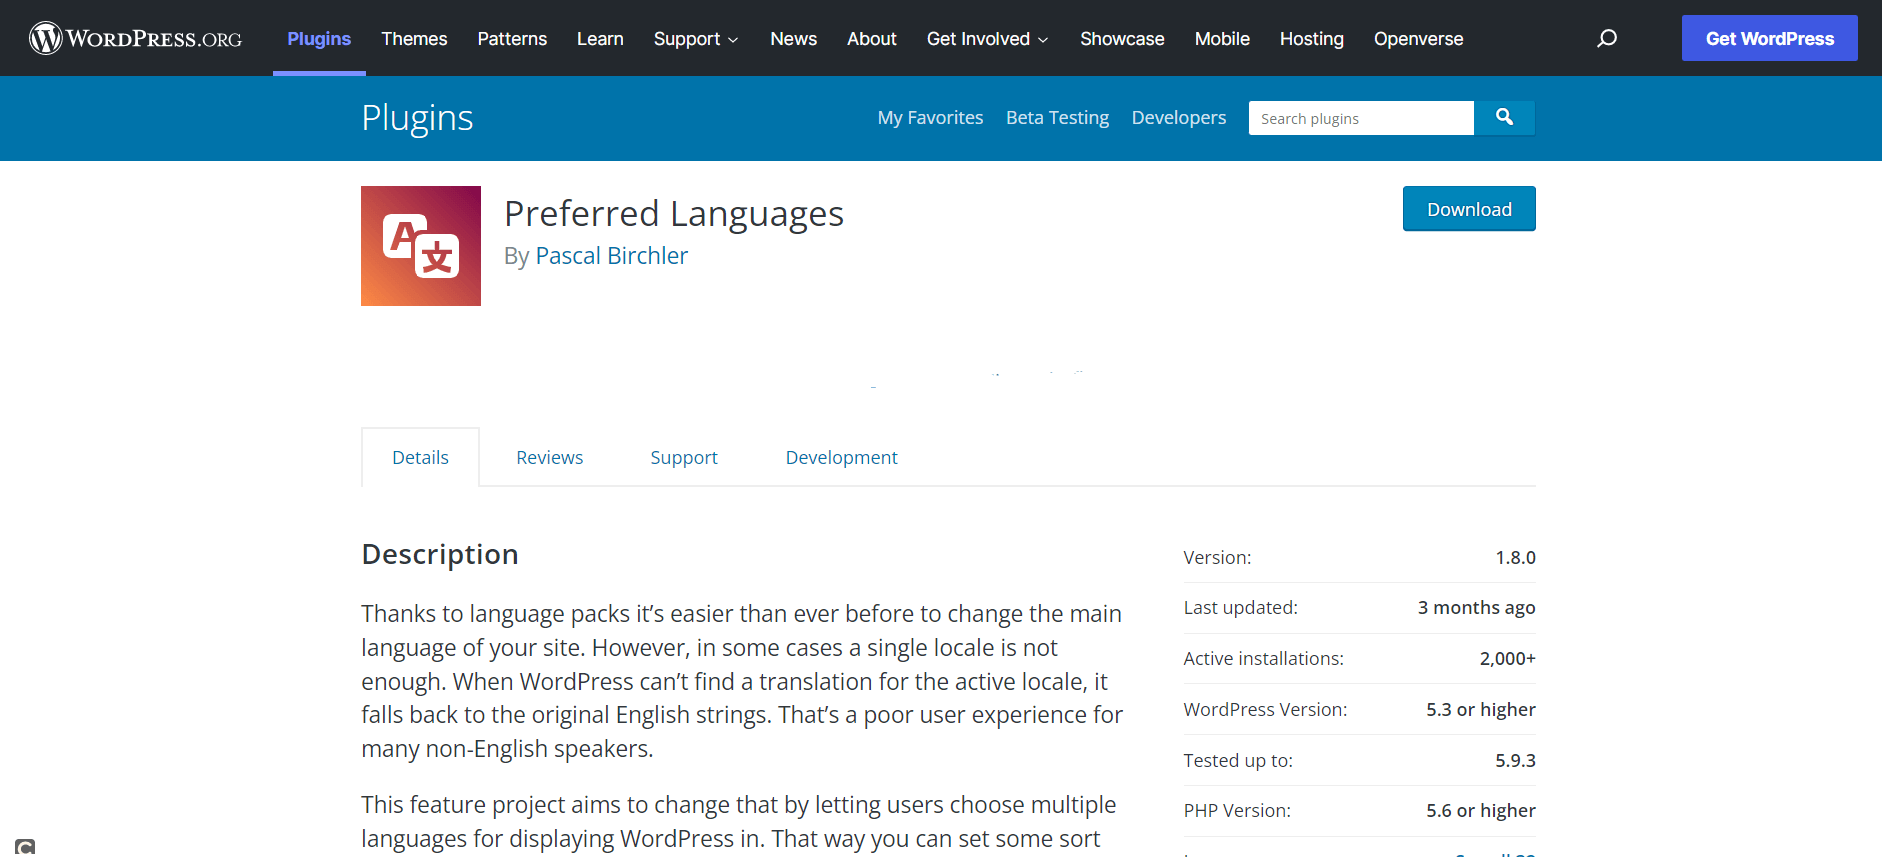 Preferred Languages plugin